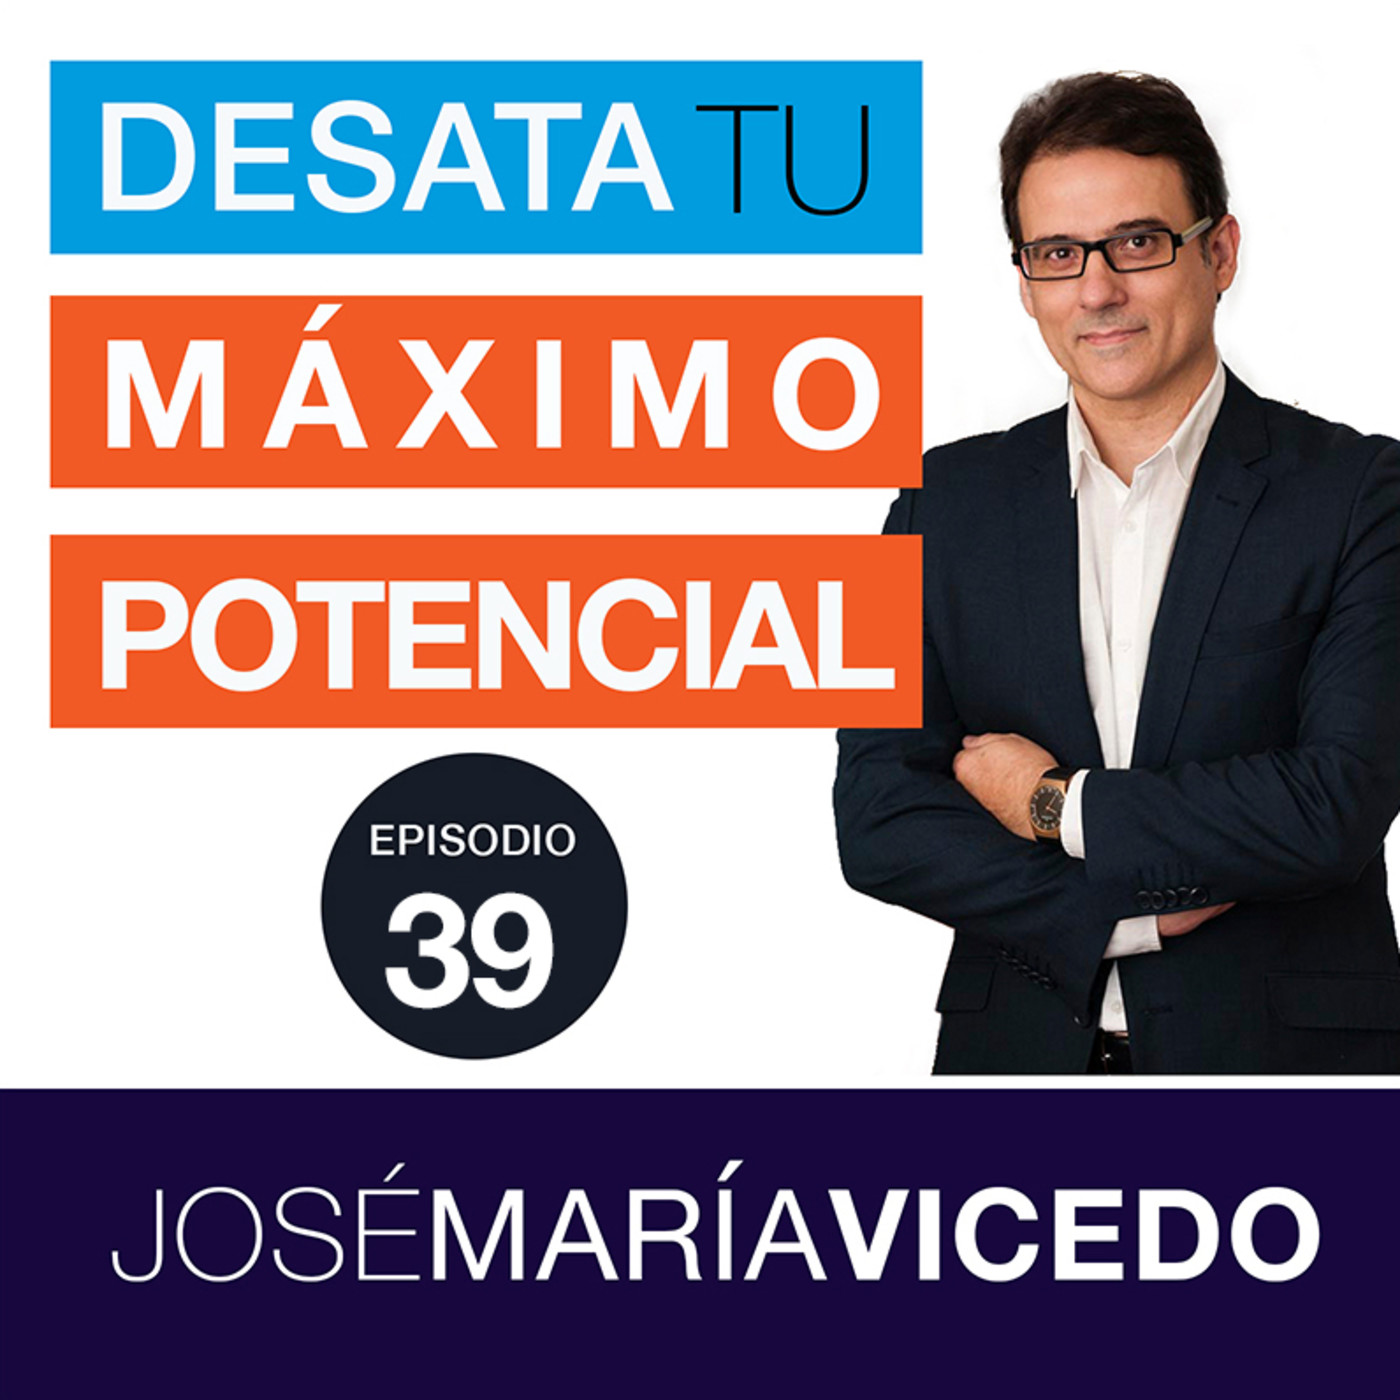 3 CLAVES PARA TRANSFORMAR TU VIDA EN POSITIVO / José María Vicedo | Ep.39